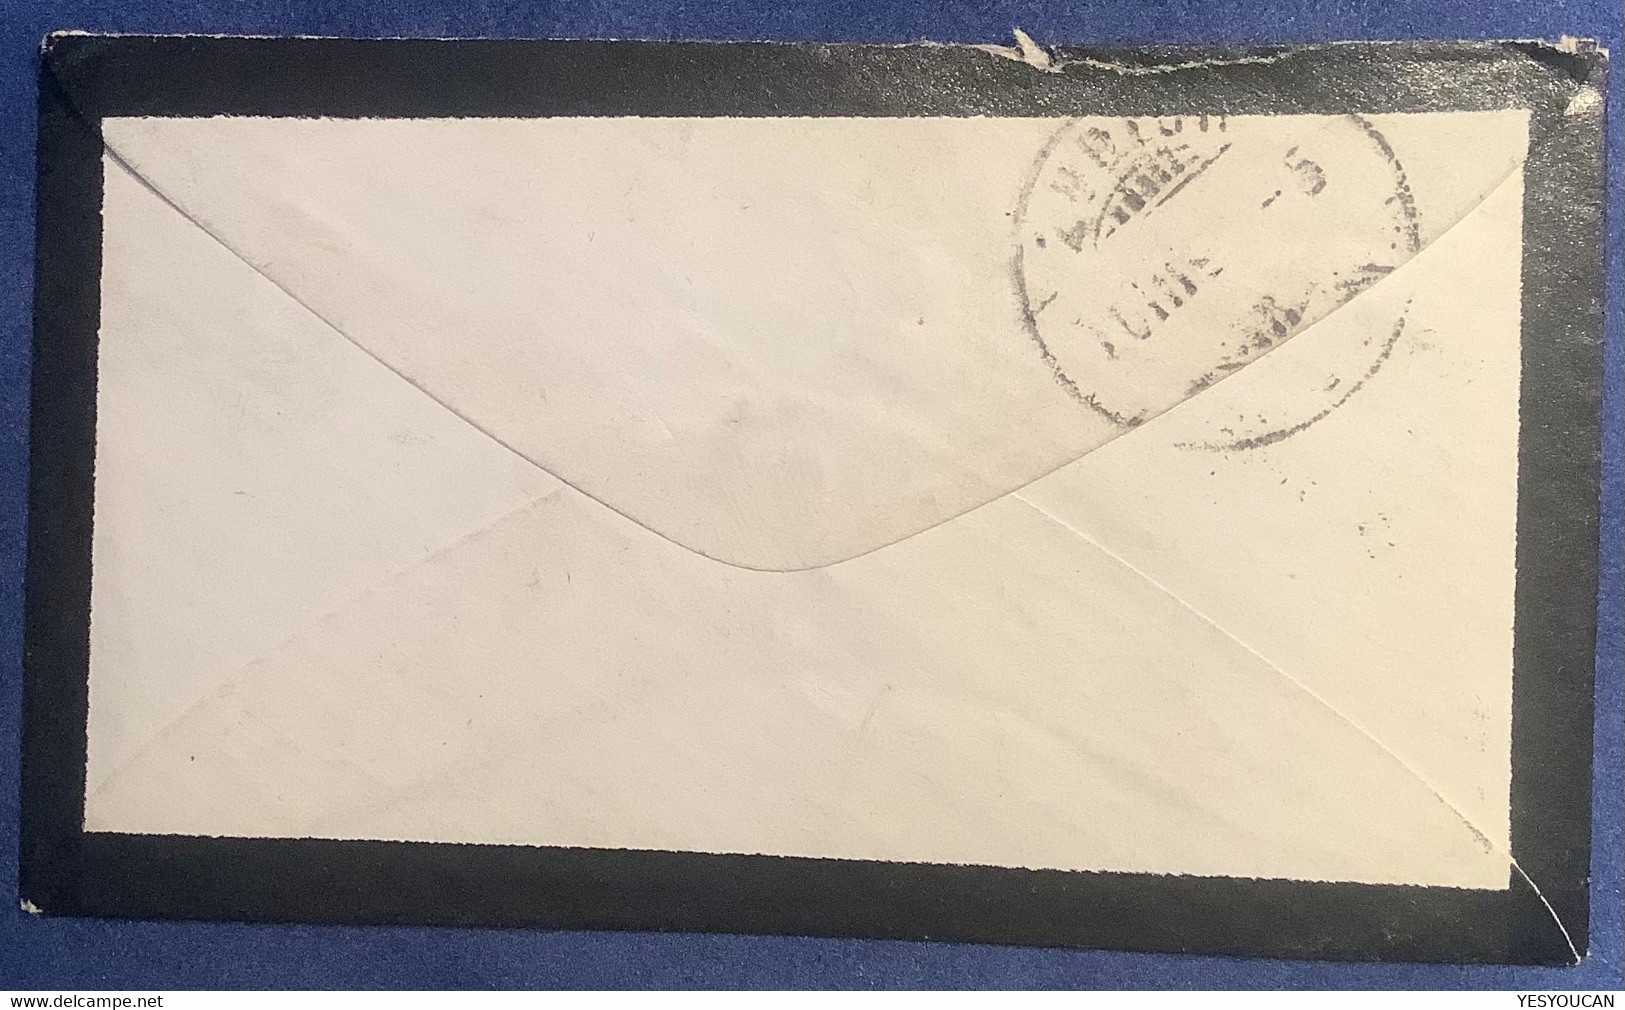 BRIEFLI / LETTRE MINIATURE: #30 NEUMÜNSTER 1881 ZH Brief (Schweiz 1862 Sitzende Helvetia Mini Mourning Cover Enveloppe - Brieven En Documenten